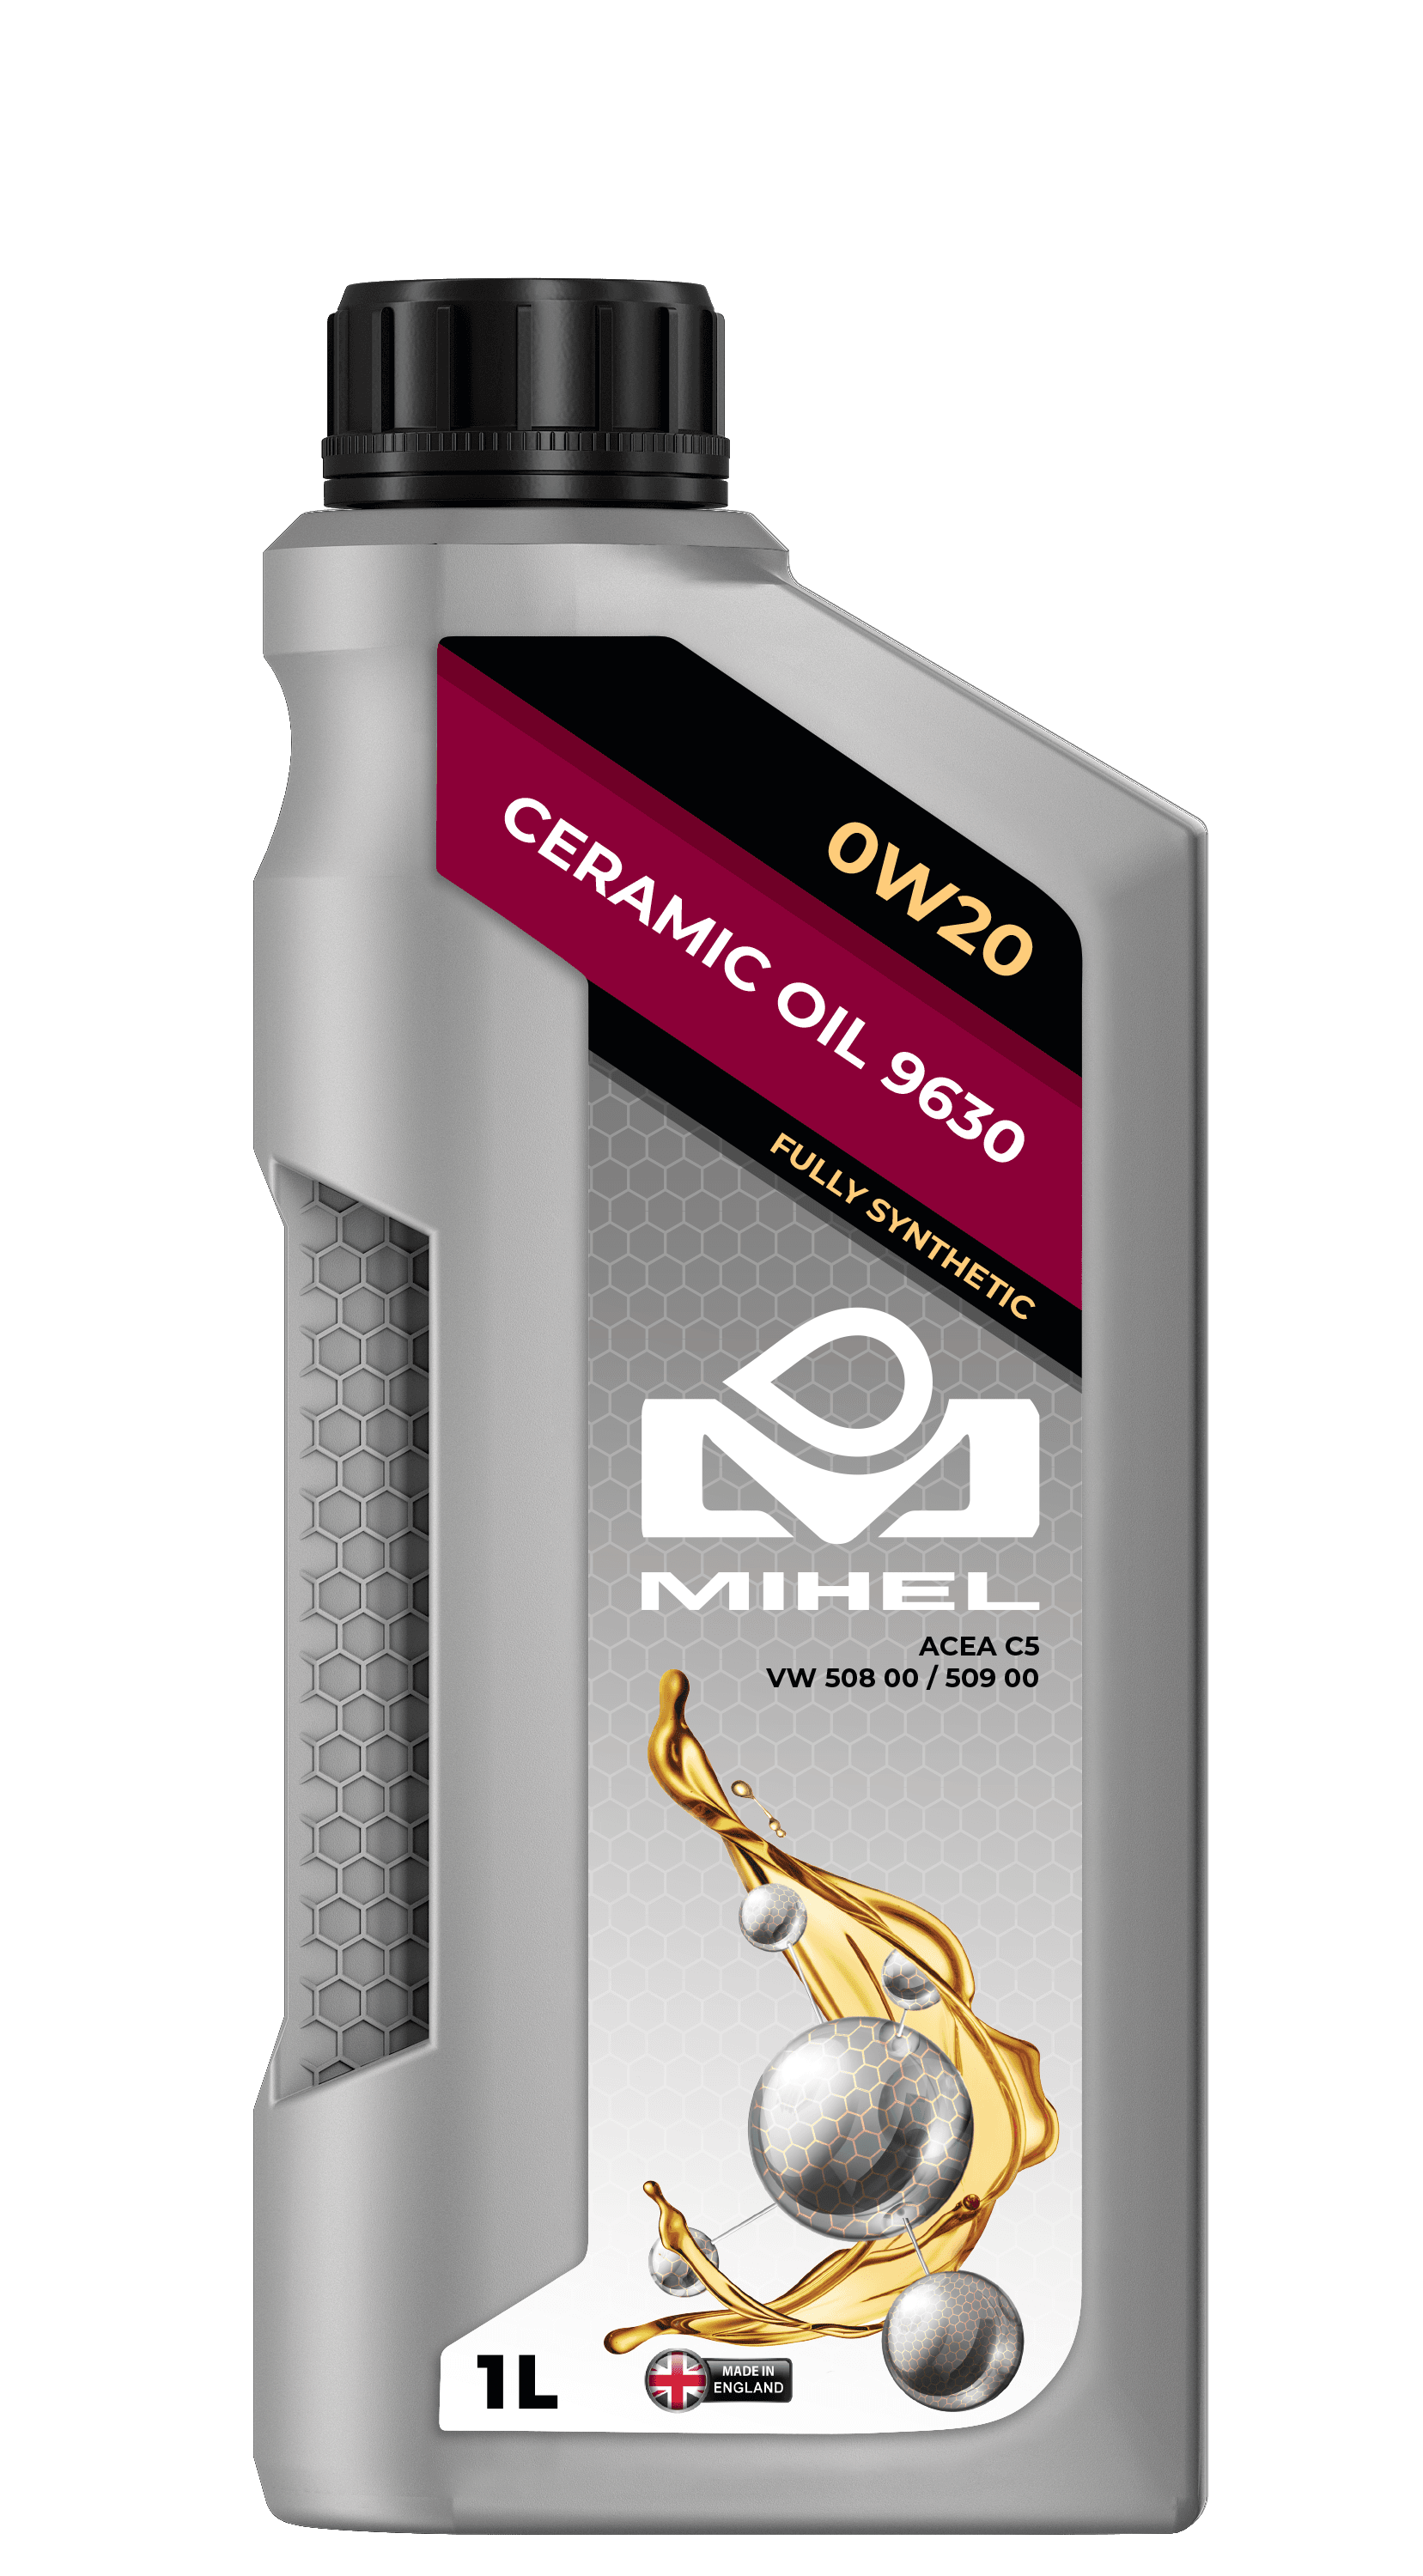 MIHEL Ceramic Oil® 9630 0W20